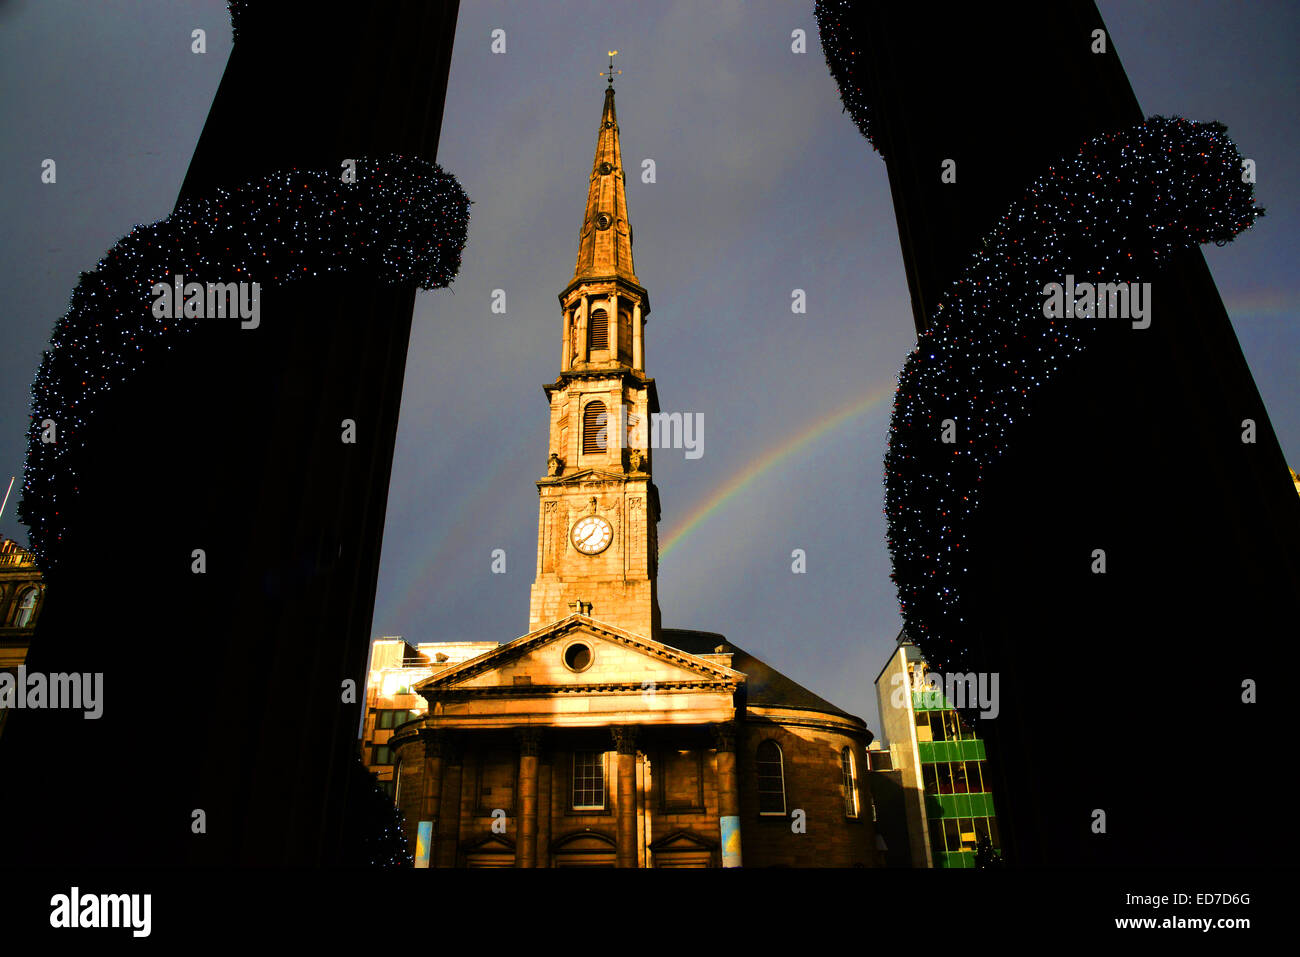 St. Andreas und St.-Georgs West Church in George Street, Edinburgh, Schottland von einem Regenbogen im Winter Sonnenlicht berührt. Stockfoto